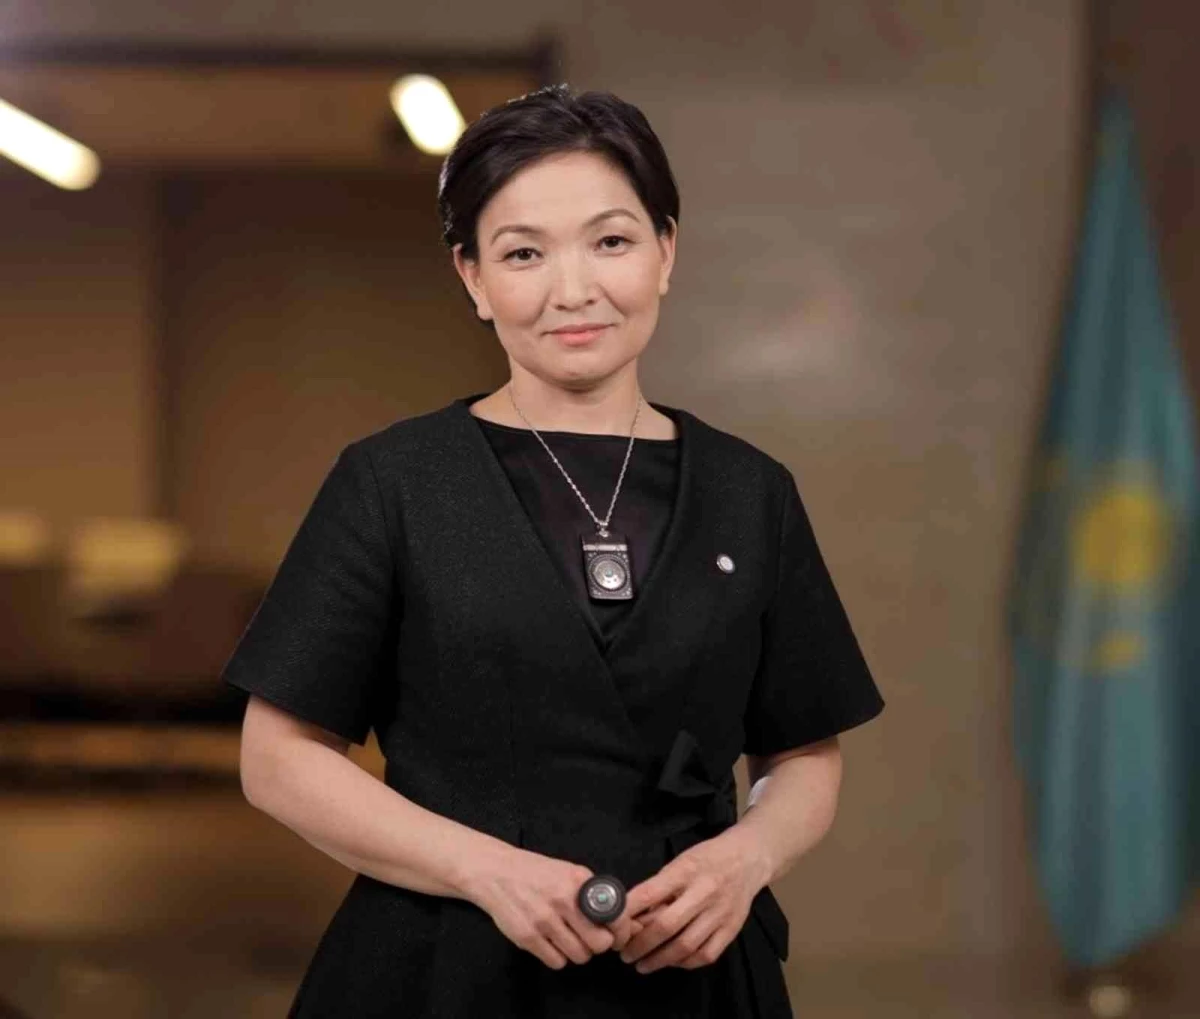 Kazakistan Kadın Komisyonu Başkanı Ramazanova: "Barış süreçlerine dahil olan kadınlar, sürdürülebilir barışın temel unsurlarına odaklanırlar"